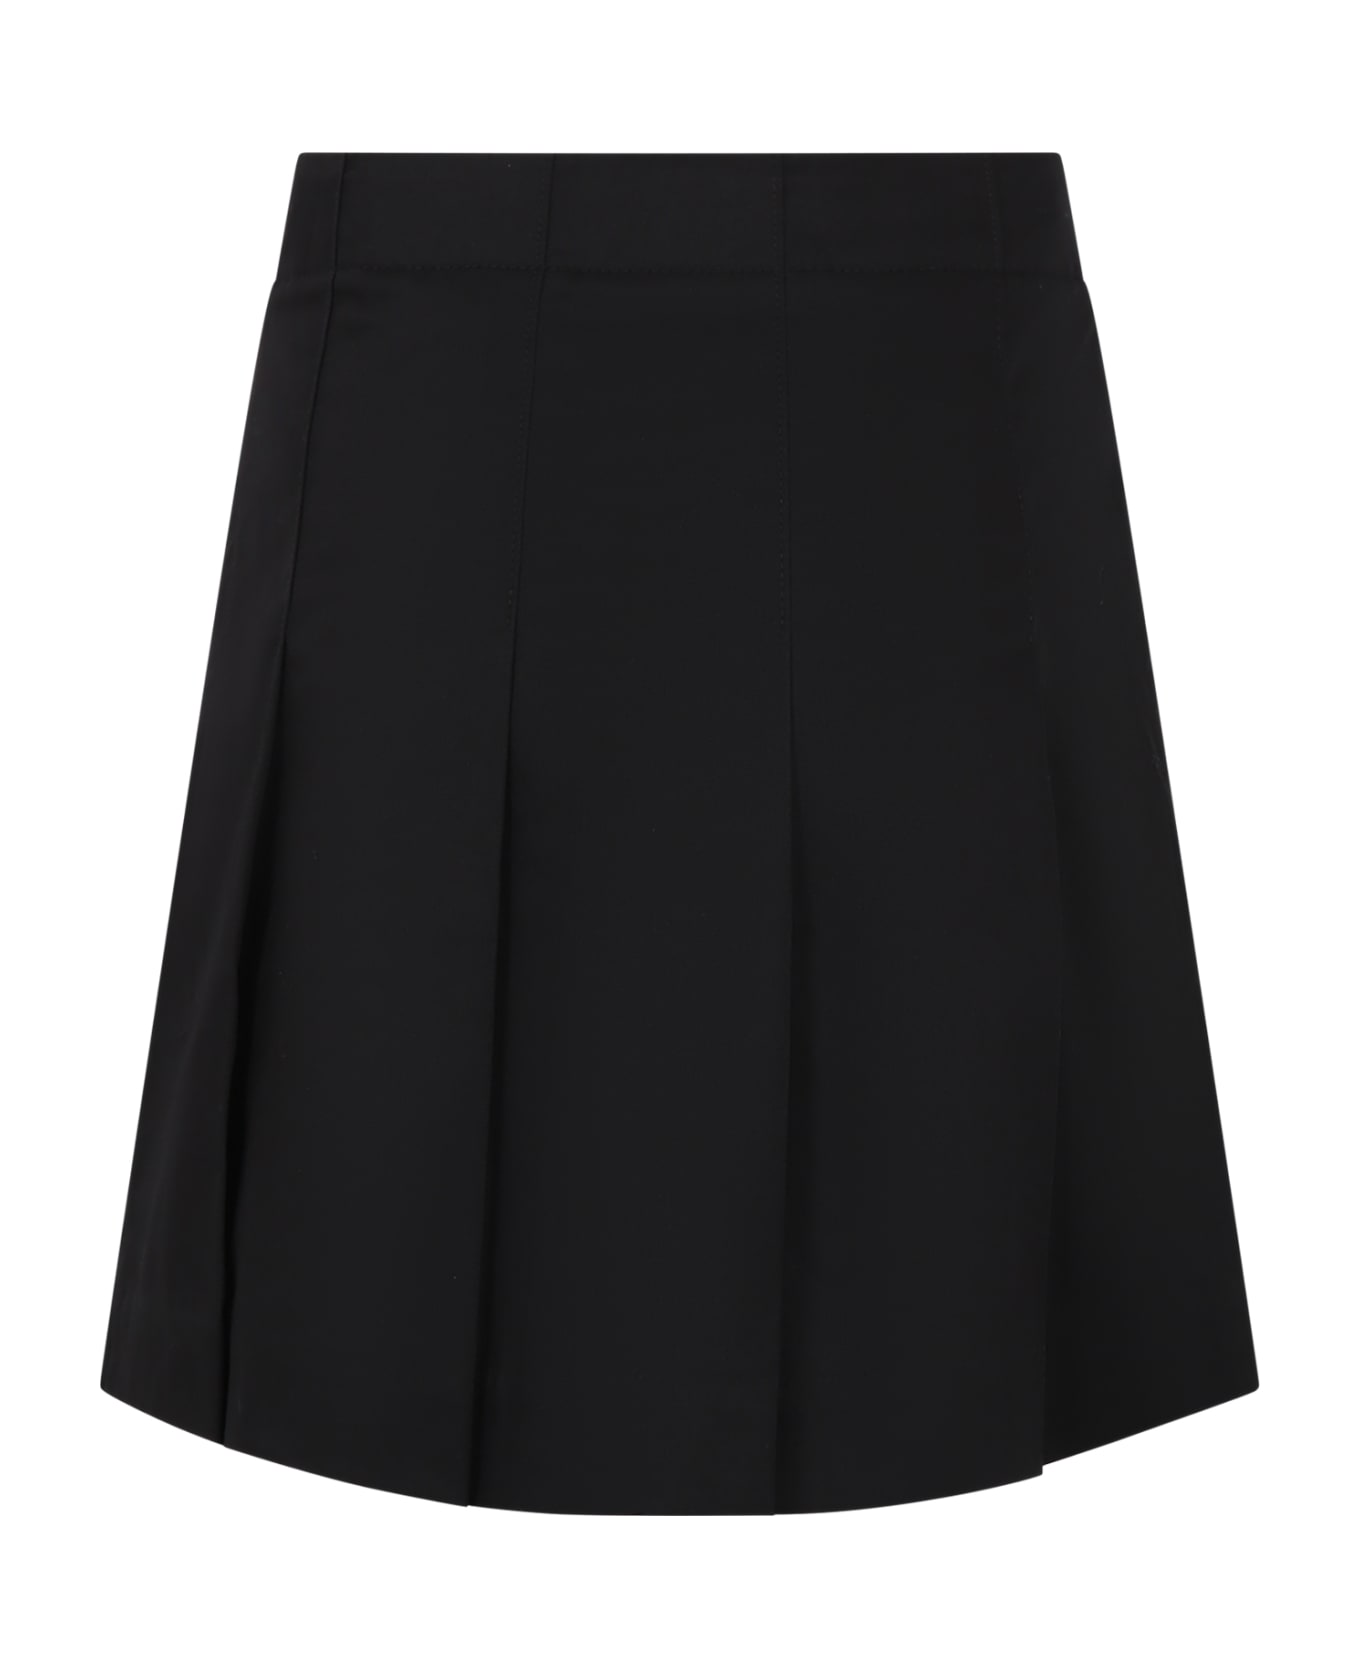 Burberry Black Skirt For Girl With Logo - Black